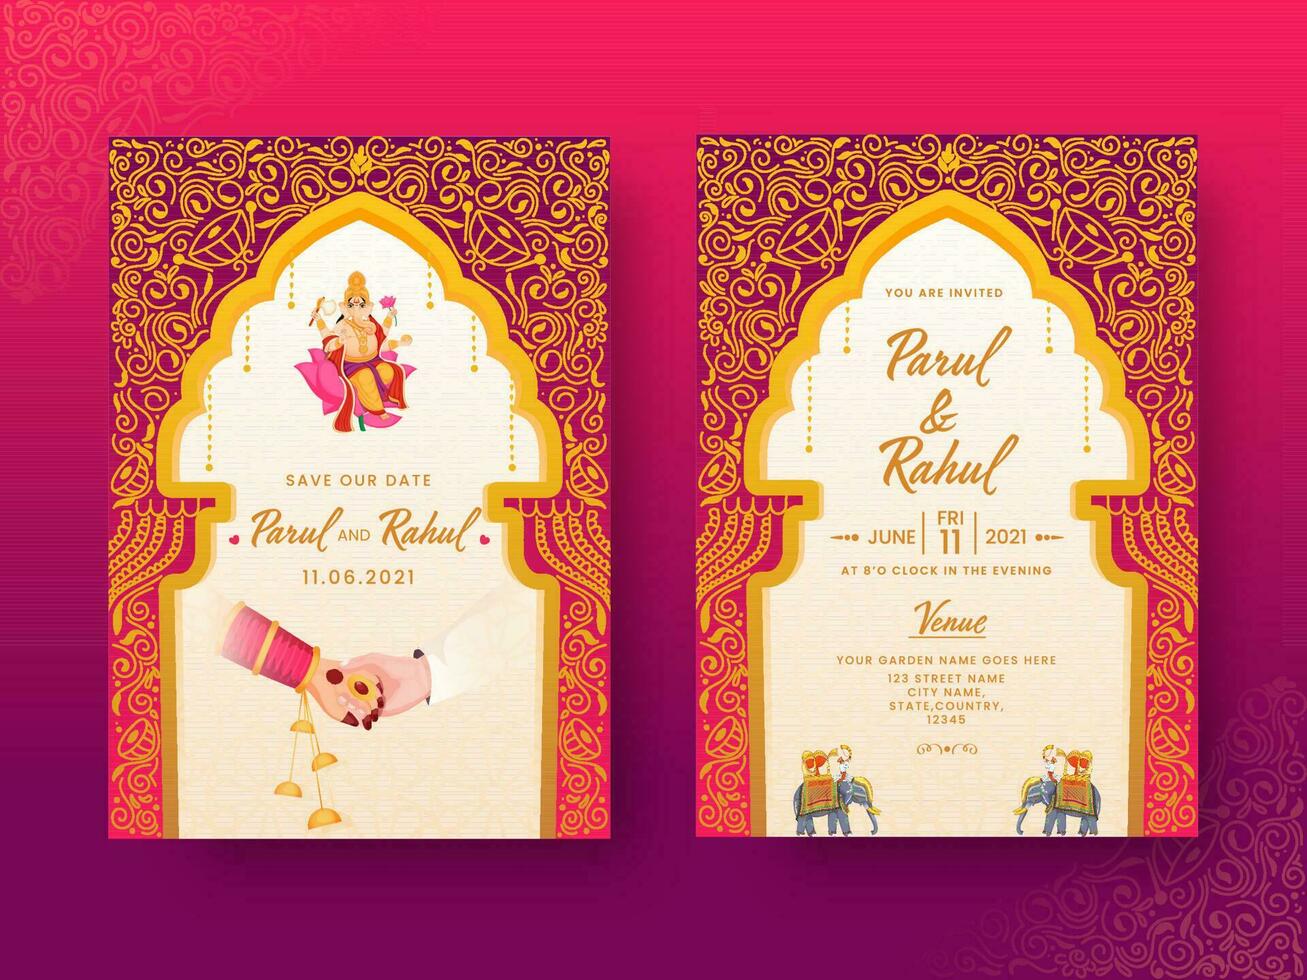 Indië bruiloft uitnodiging kaart met paar handen en evenementenlocatie details in voorkant en terug visie. vector